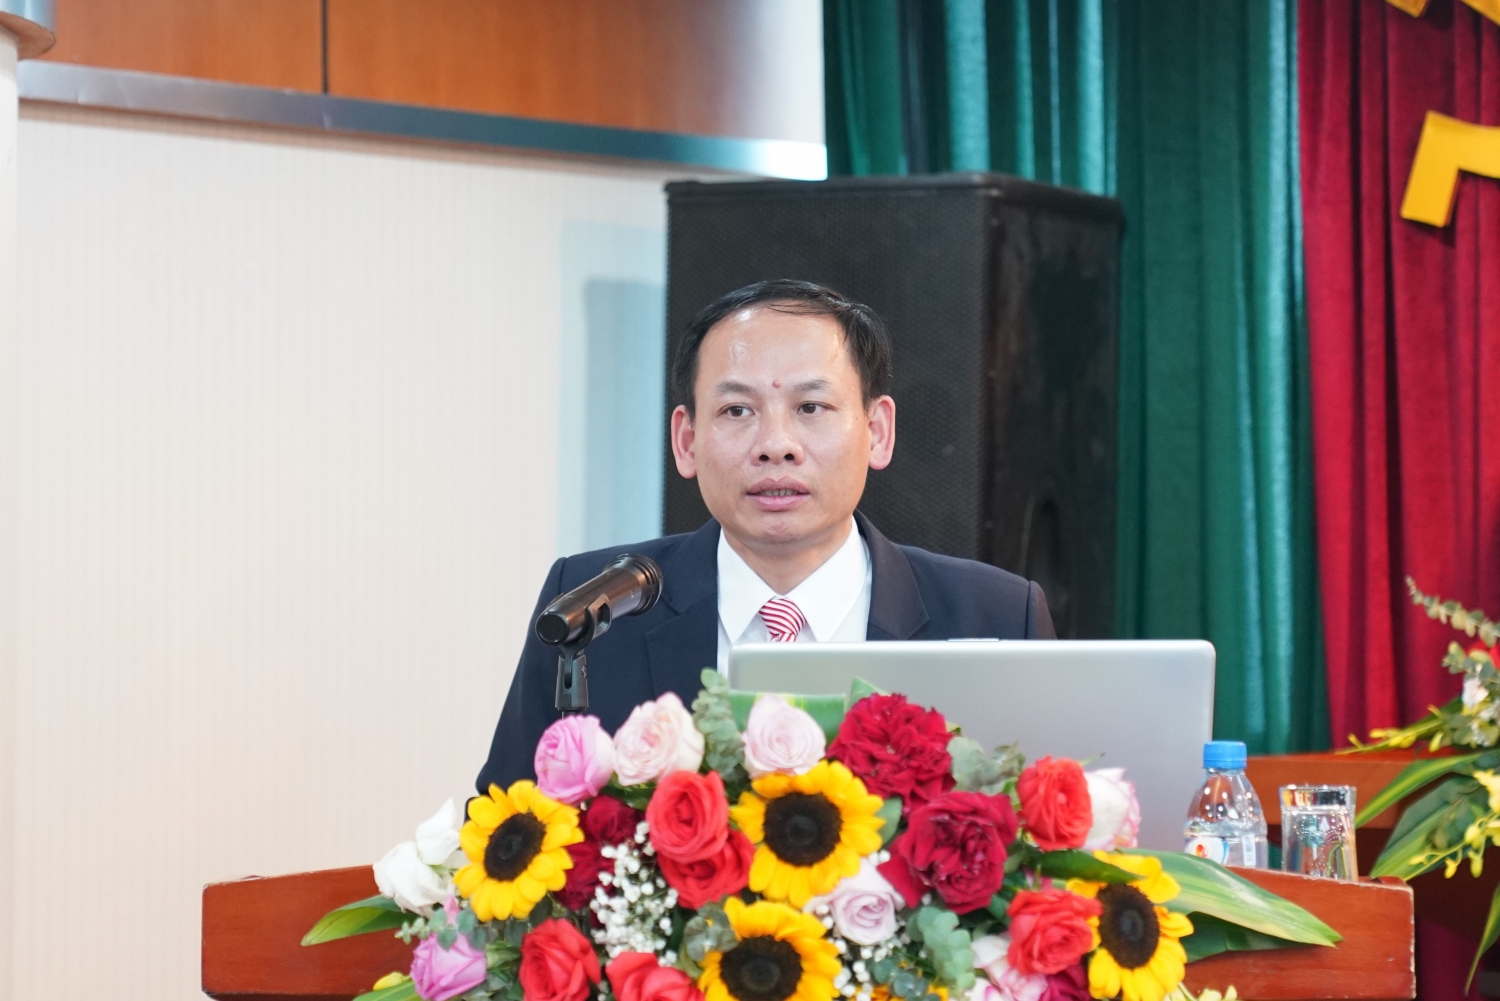 Chủ tịch Công đoàn VPI Vũ Ngọc Trình báo cáo kết quả hoạt động của Ban chấp hành Công đoàn VPI khóa XI, nhiệm kỳ 2018 - 2023 và phương hướng, nhiệm vụ công tác khóa XII, nhiệm kỳ 2023 - 2028